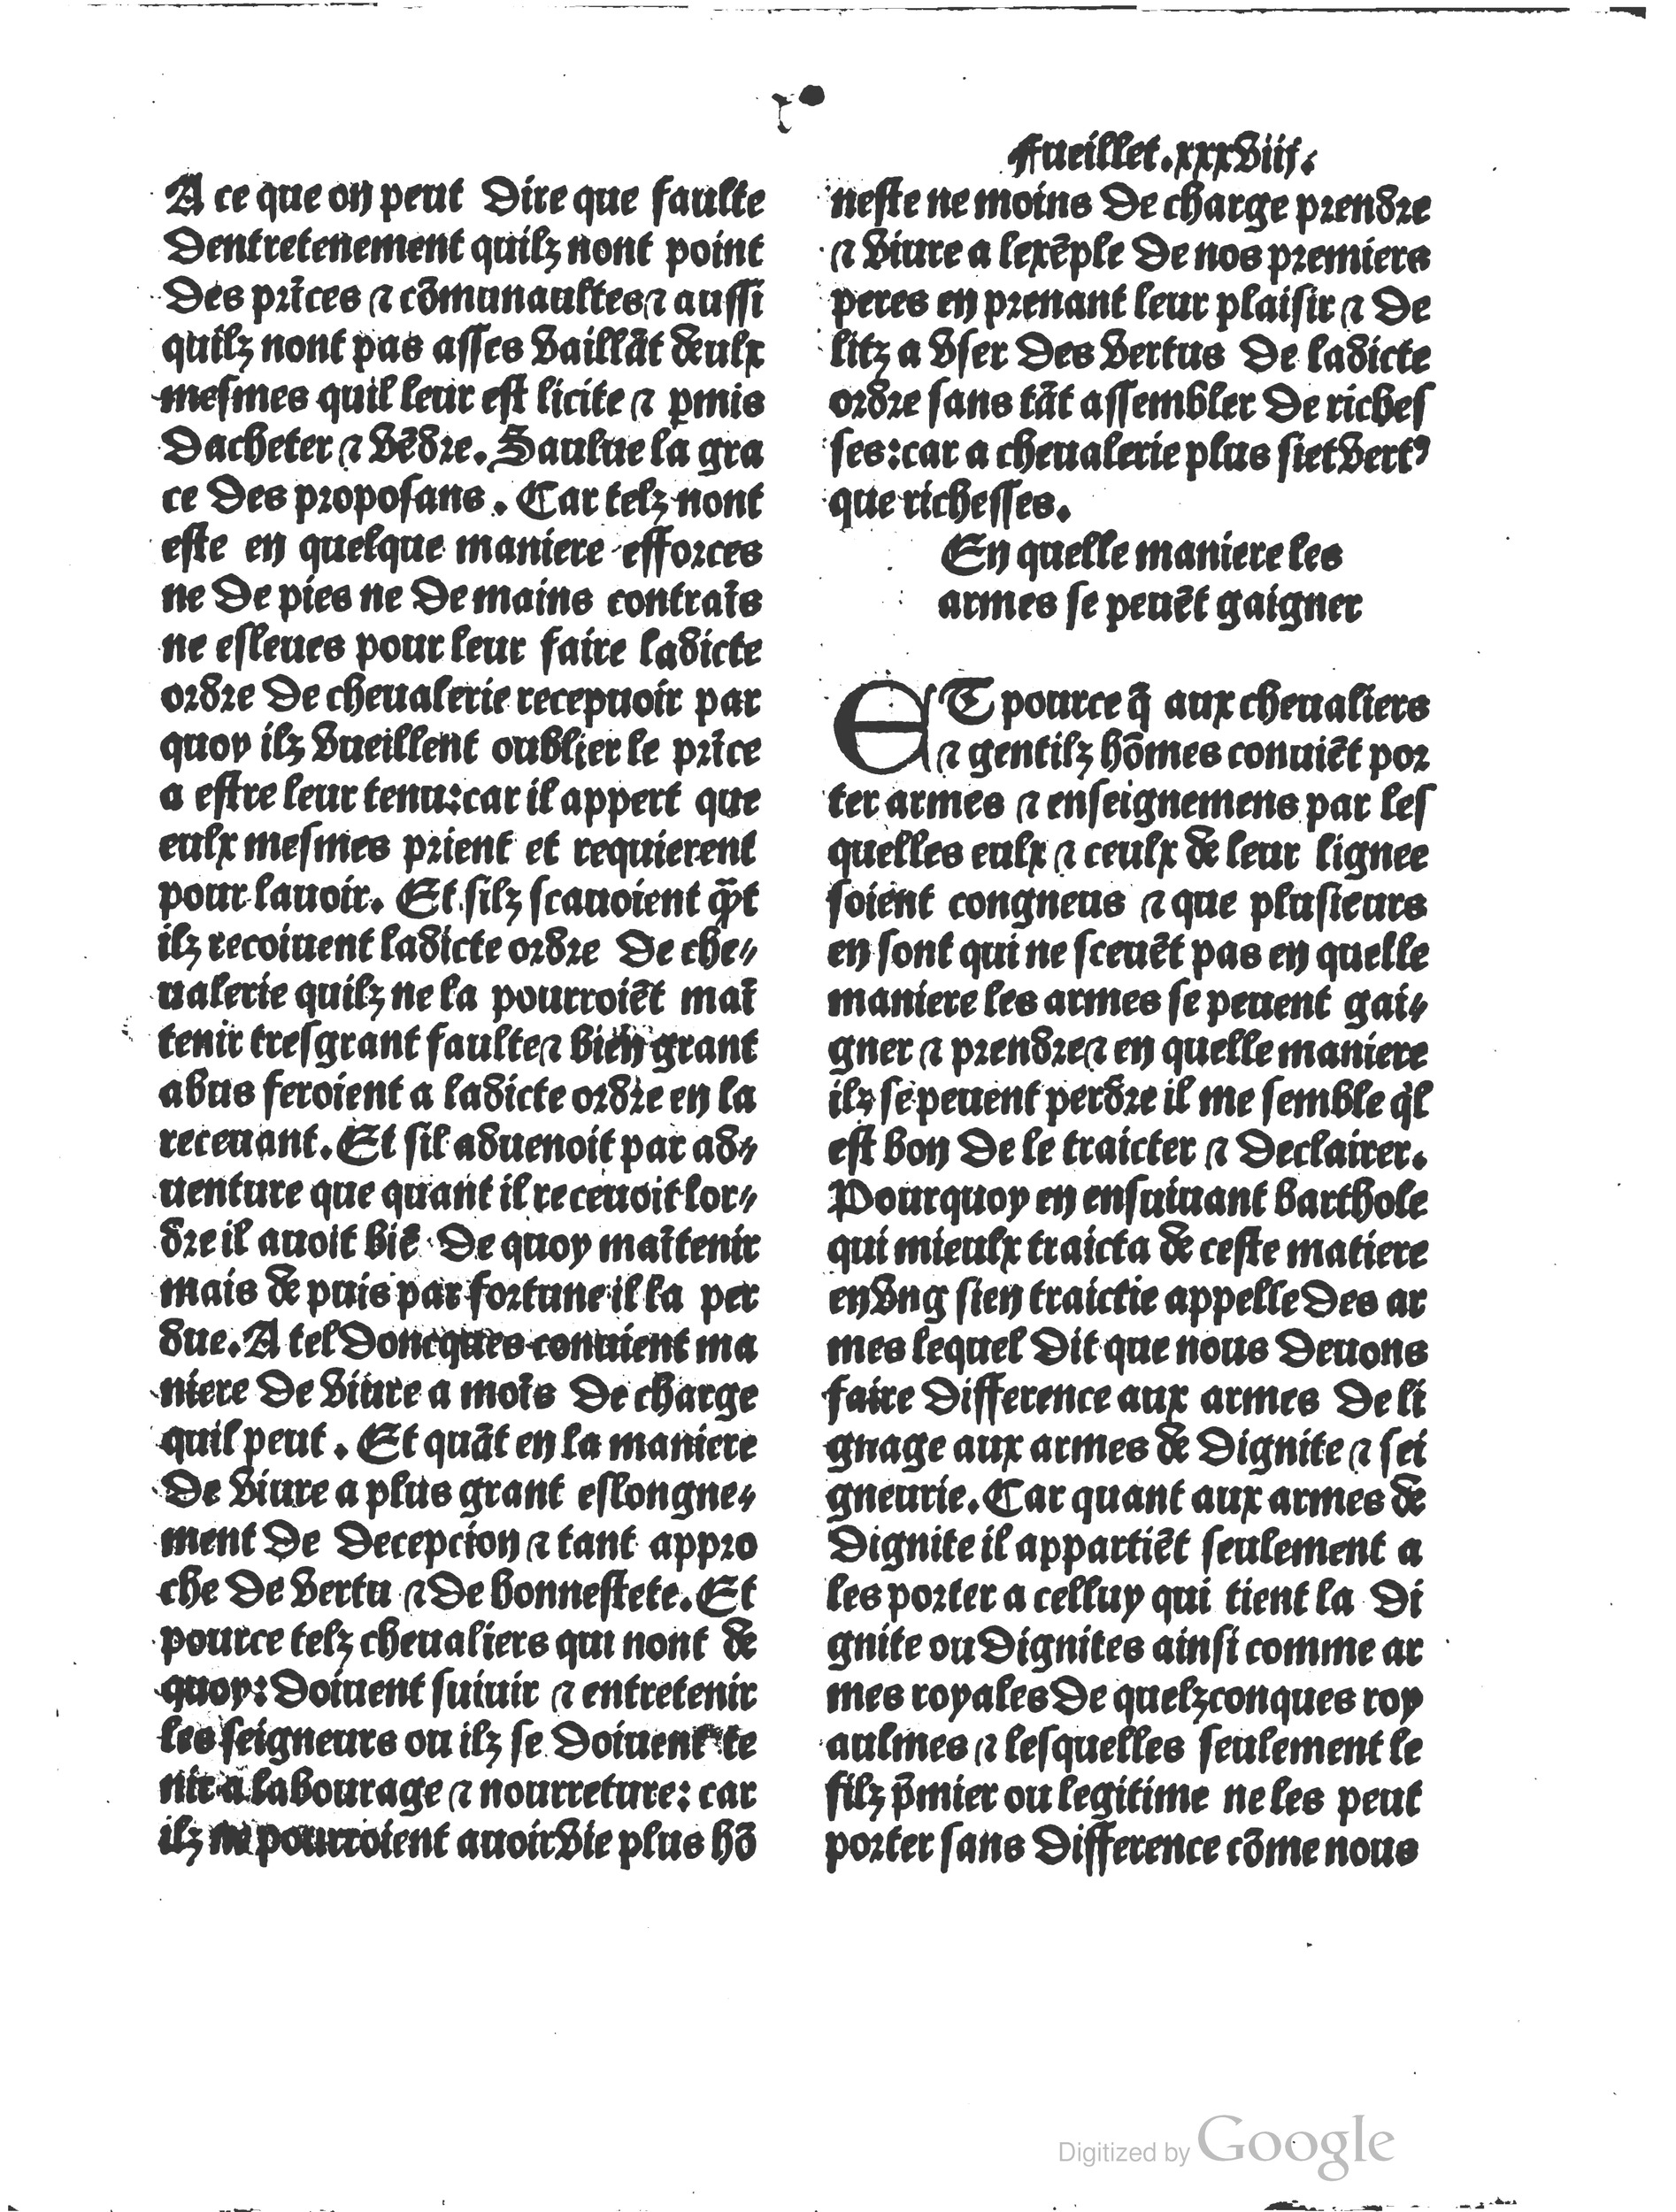 1497 Trésor de noblesse Vérard_BM Lyon_Page_089.jpg